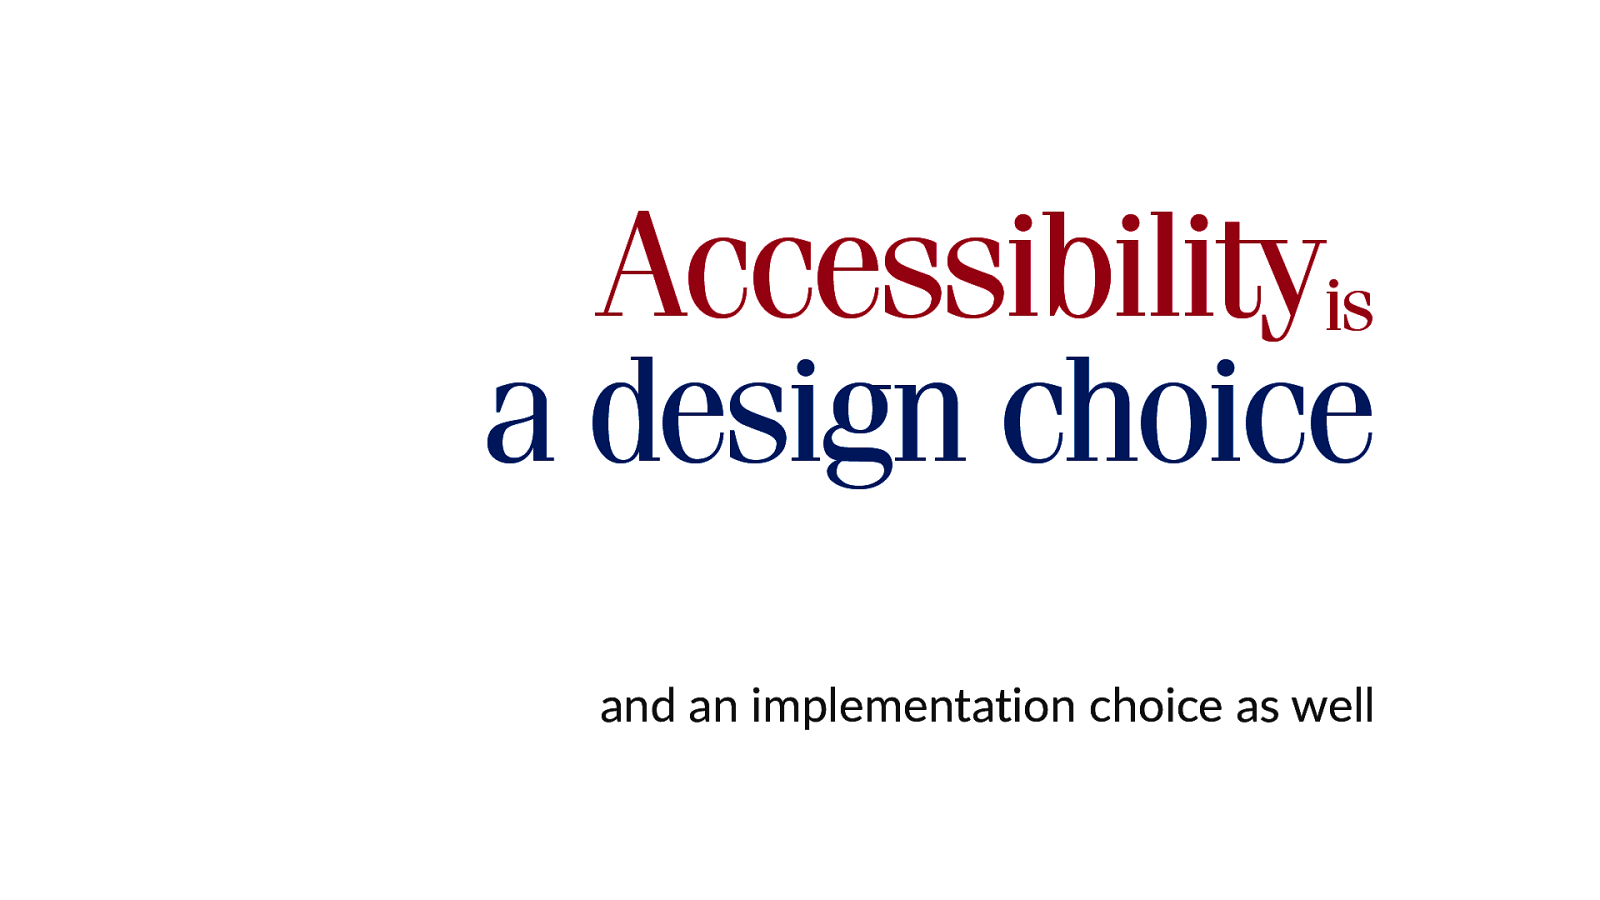 Accessibility is a design choice by Gunnar Bittersmann